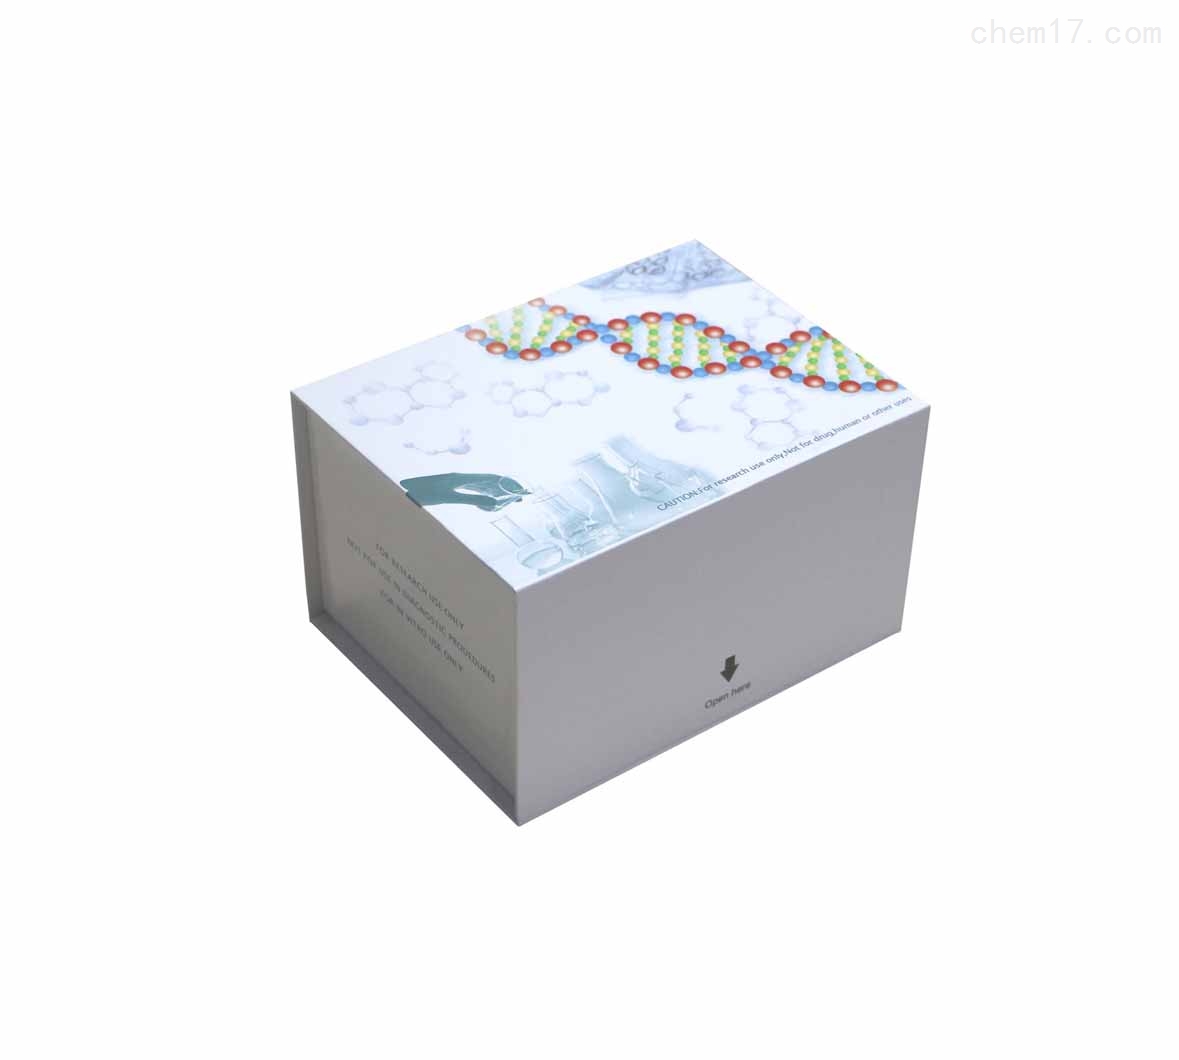 β淀粉样蛋白1-40(Aβ1-40)ELISA试剂盒货到付款